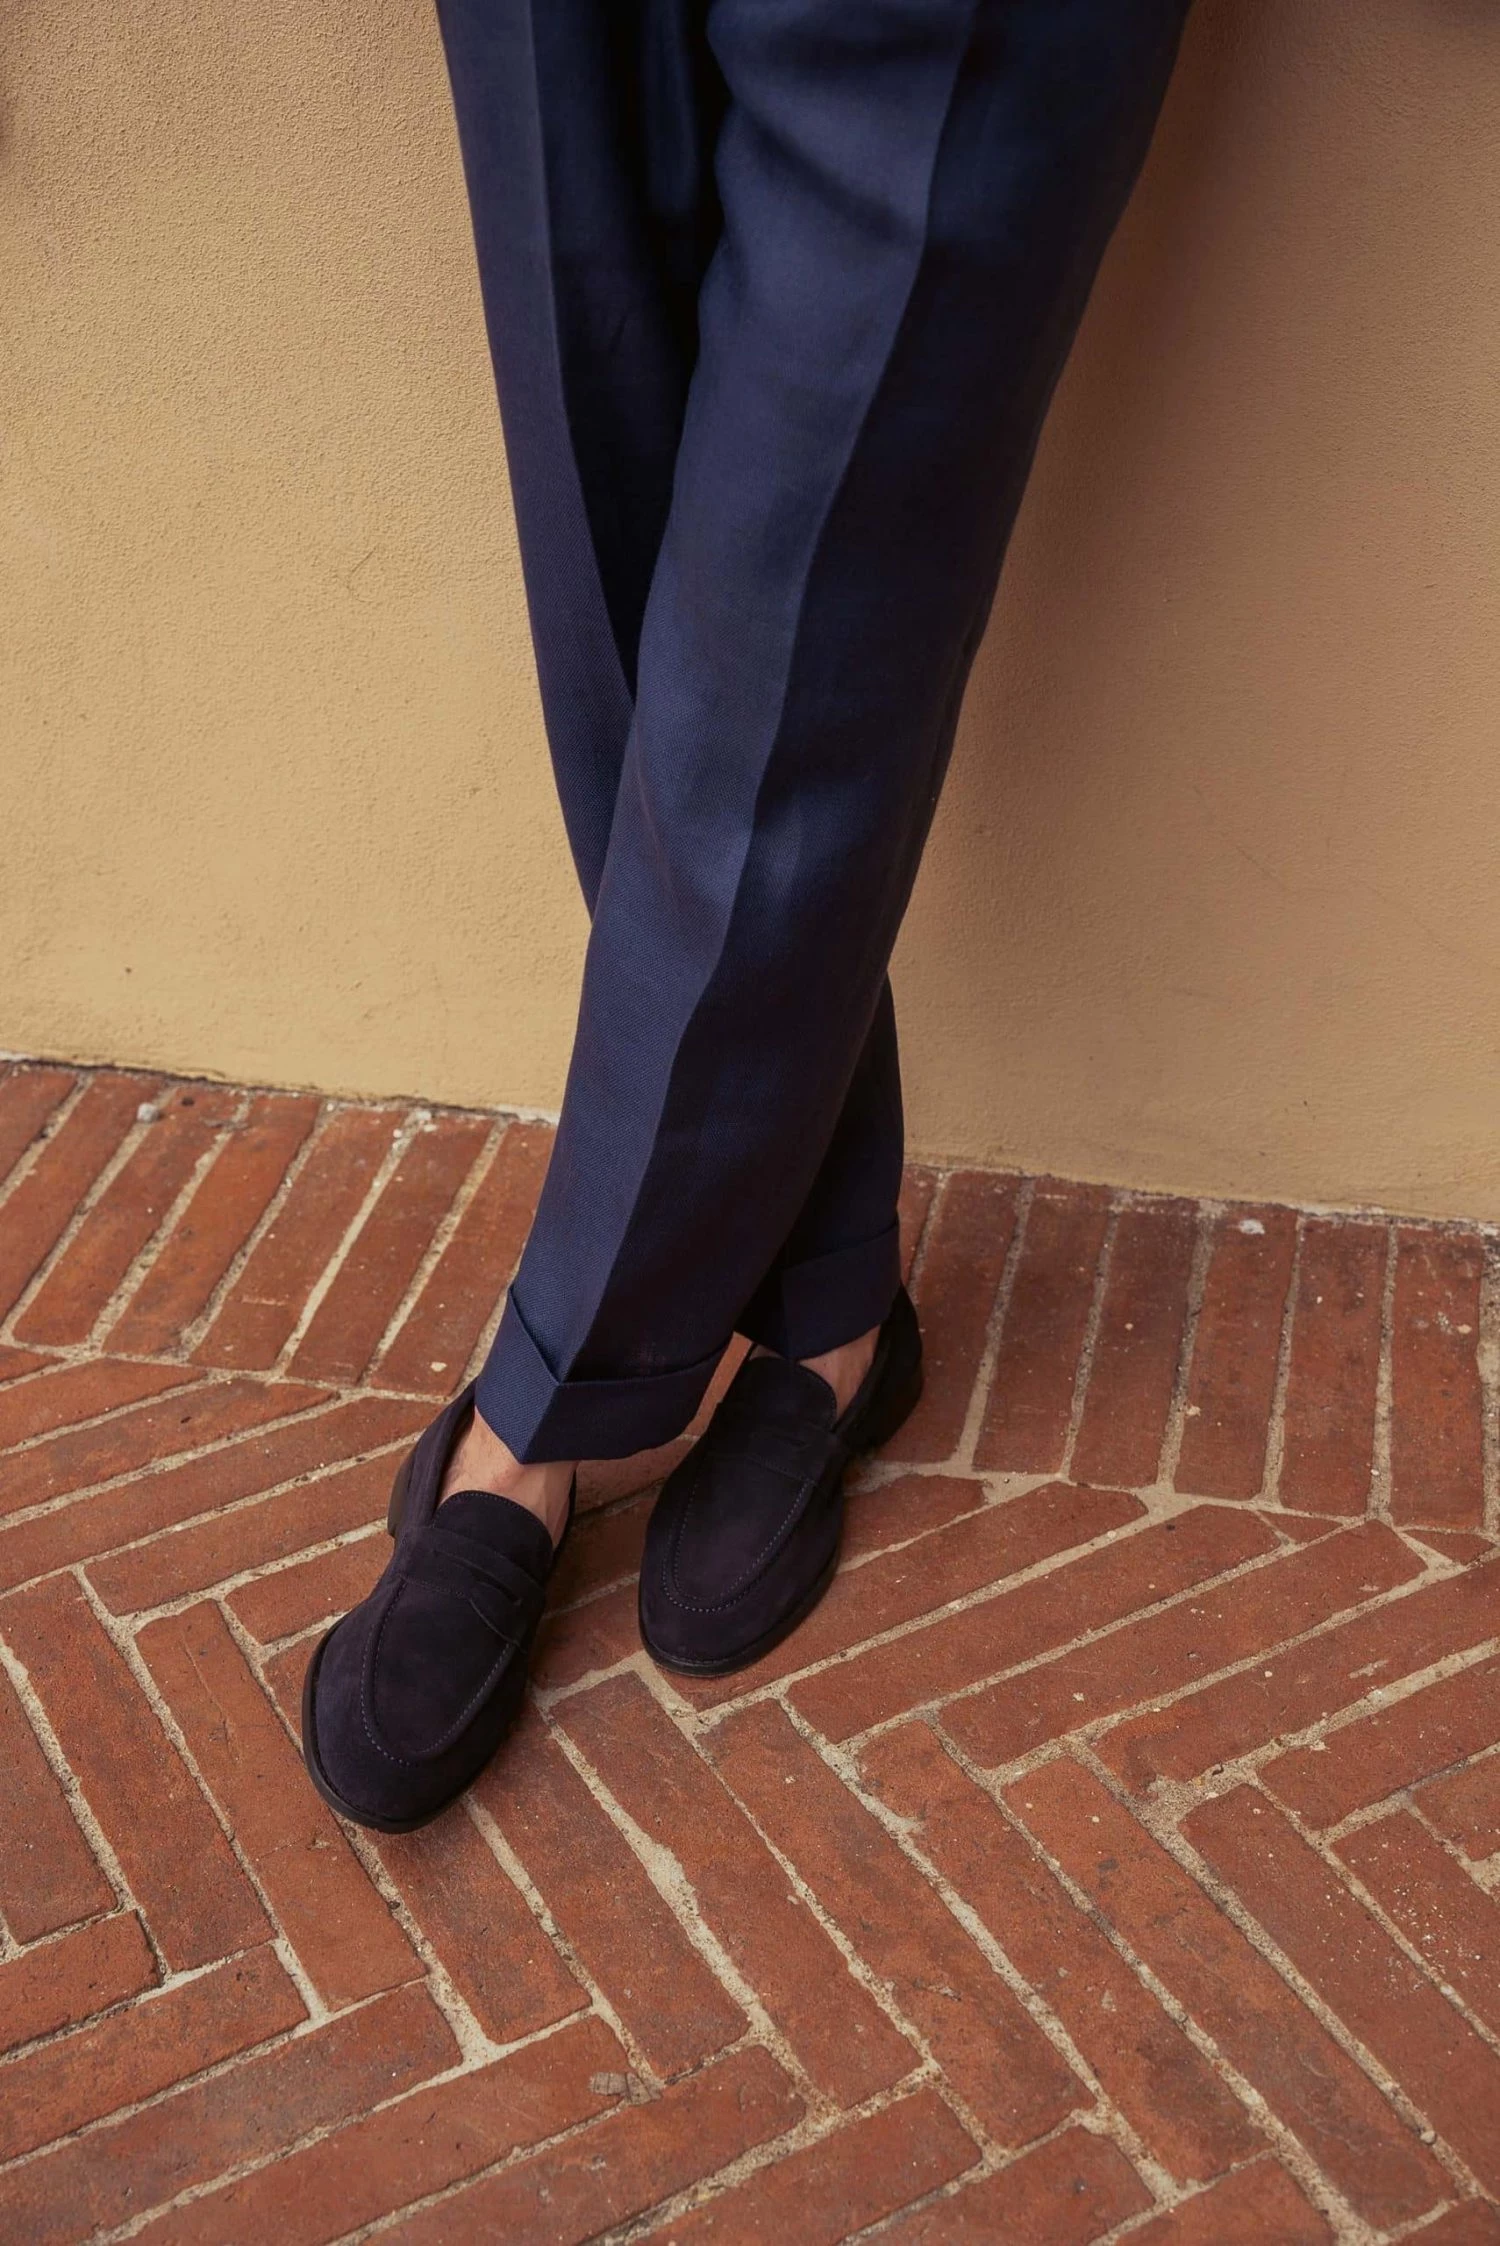 Legs crossed, in navy blue suit trouser legs and blue loafers, standing on herringbone brick floor